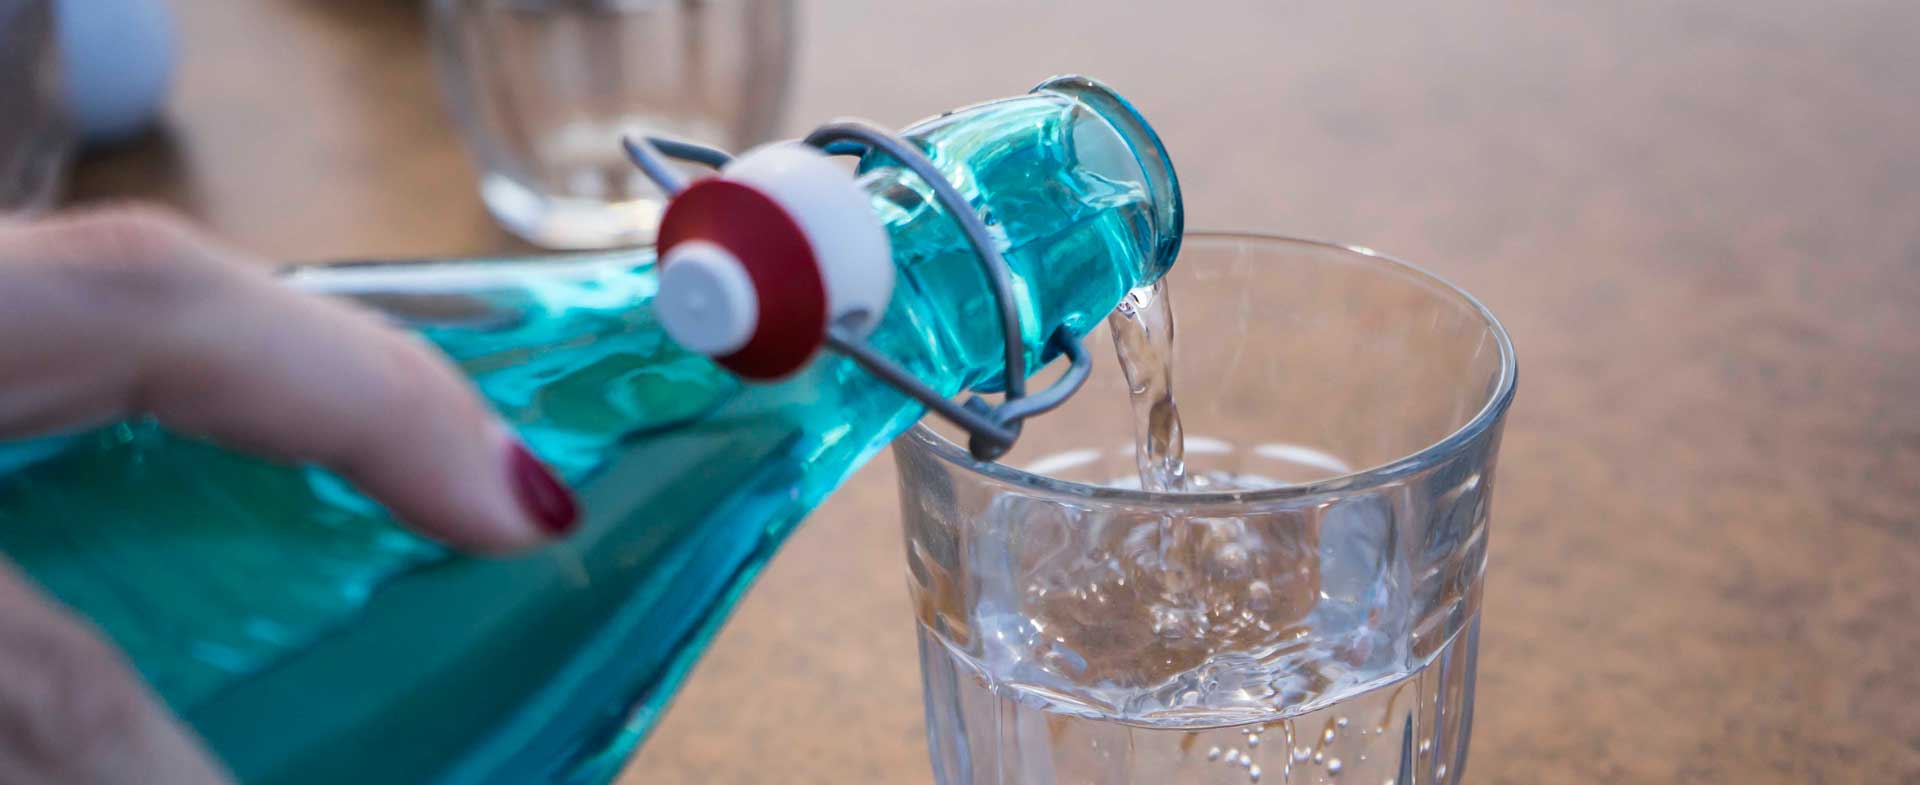 Sự thật về Nước kiềm - Thức uống có lợi cho sức khỏe hay chỉ là sự cường điệu?